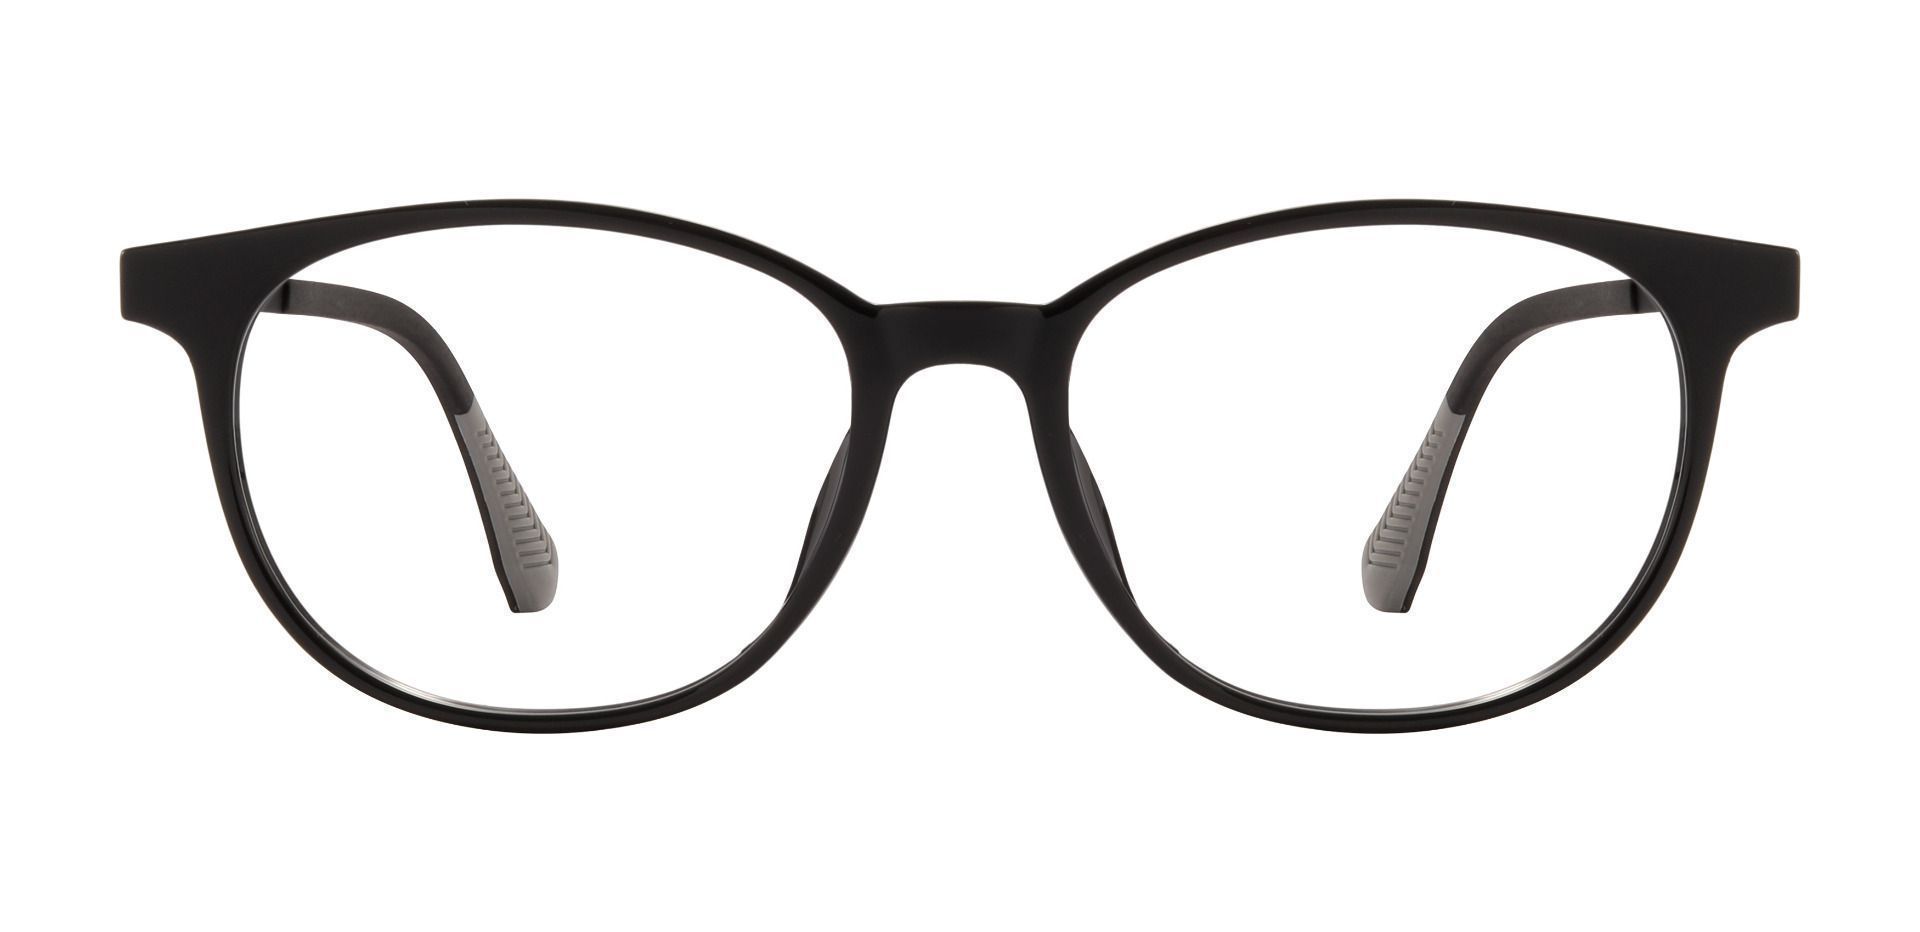 Hannigan Oval Prescription Glasses - Black